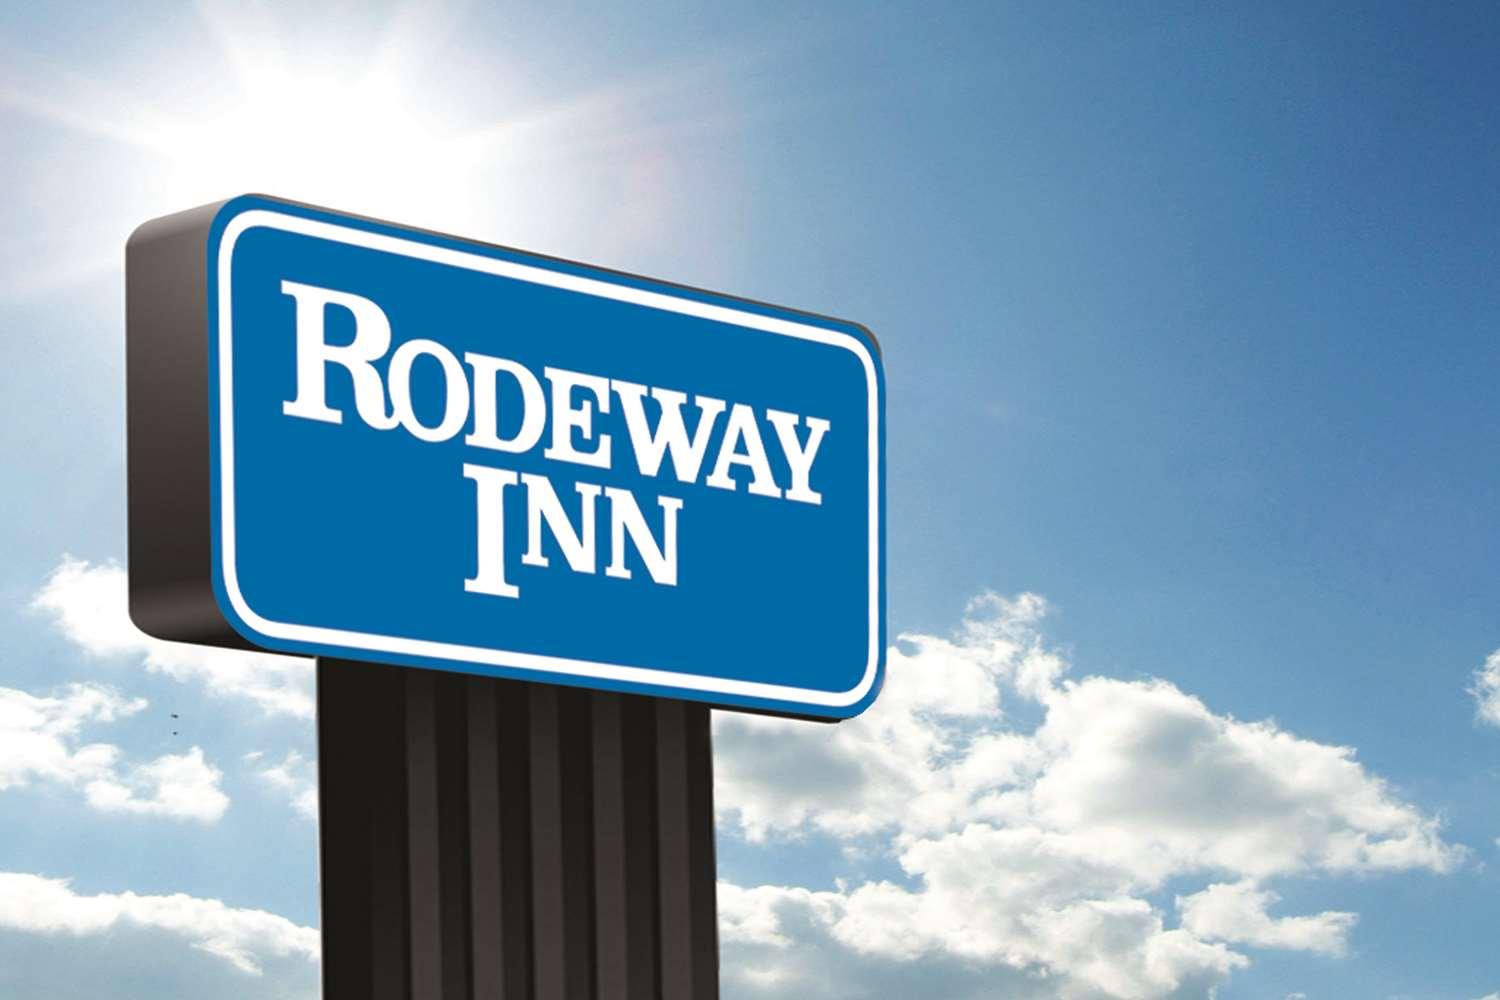 Rodeway Inn Baltimore in Baltimore, MD